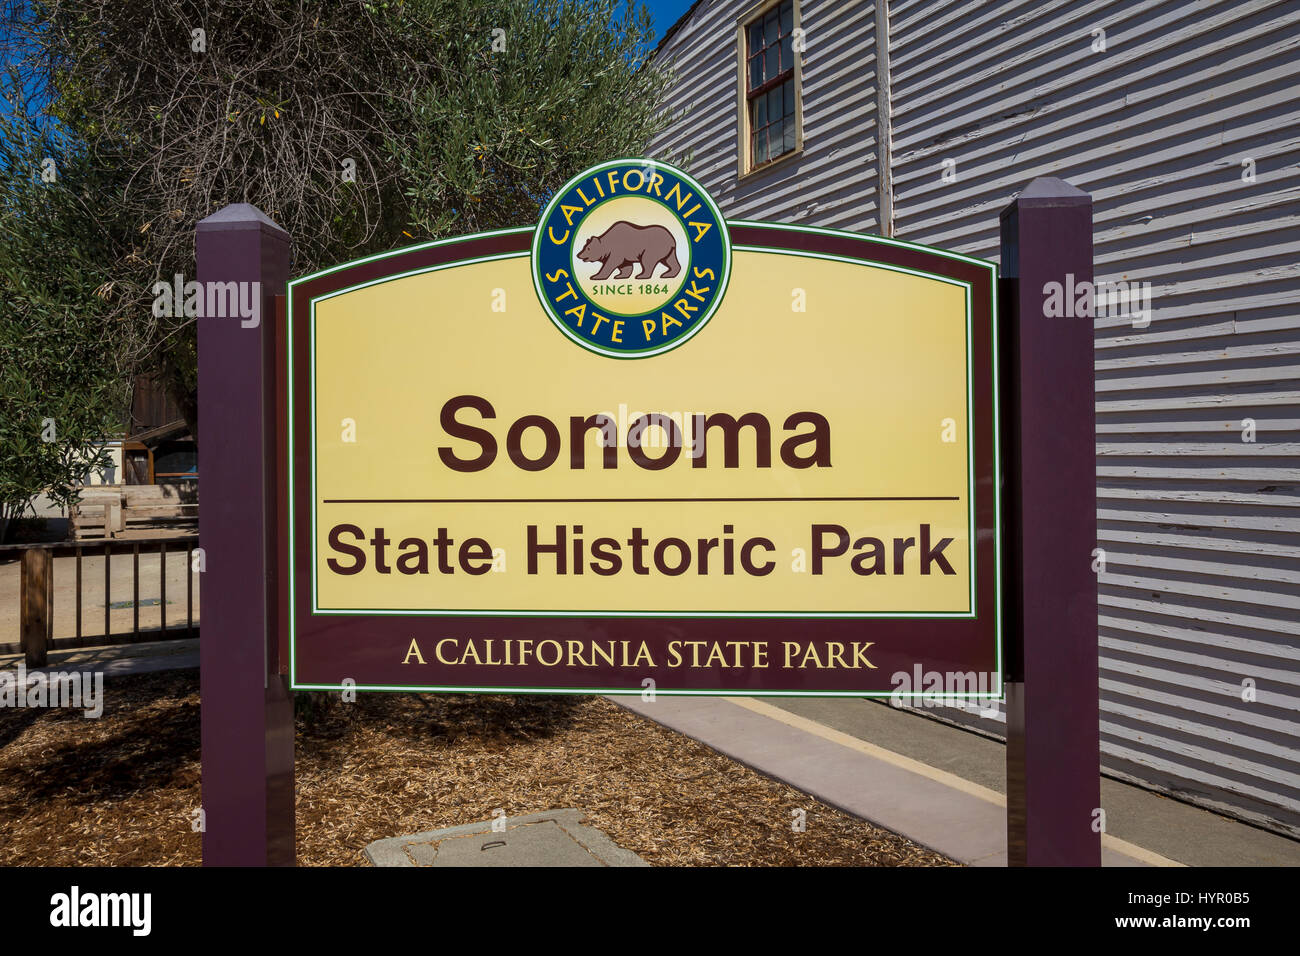 Signe, Sonoma State Historic Park, ville de Sonoma, sonoma, sonoma county, Californie, Etats-Unis, Amérique du Nord Banque D'Images